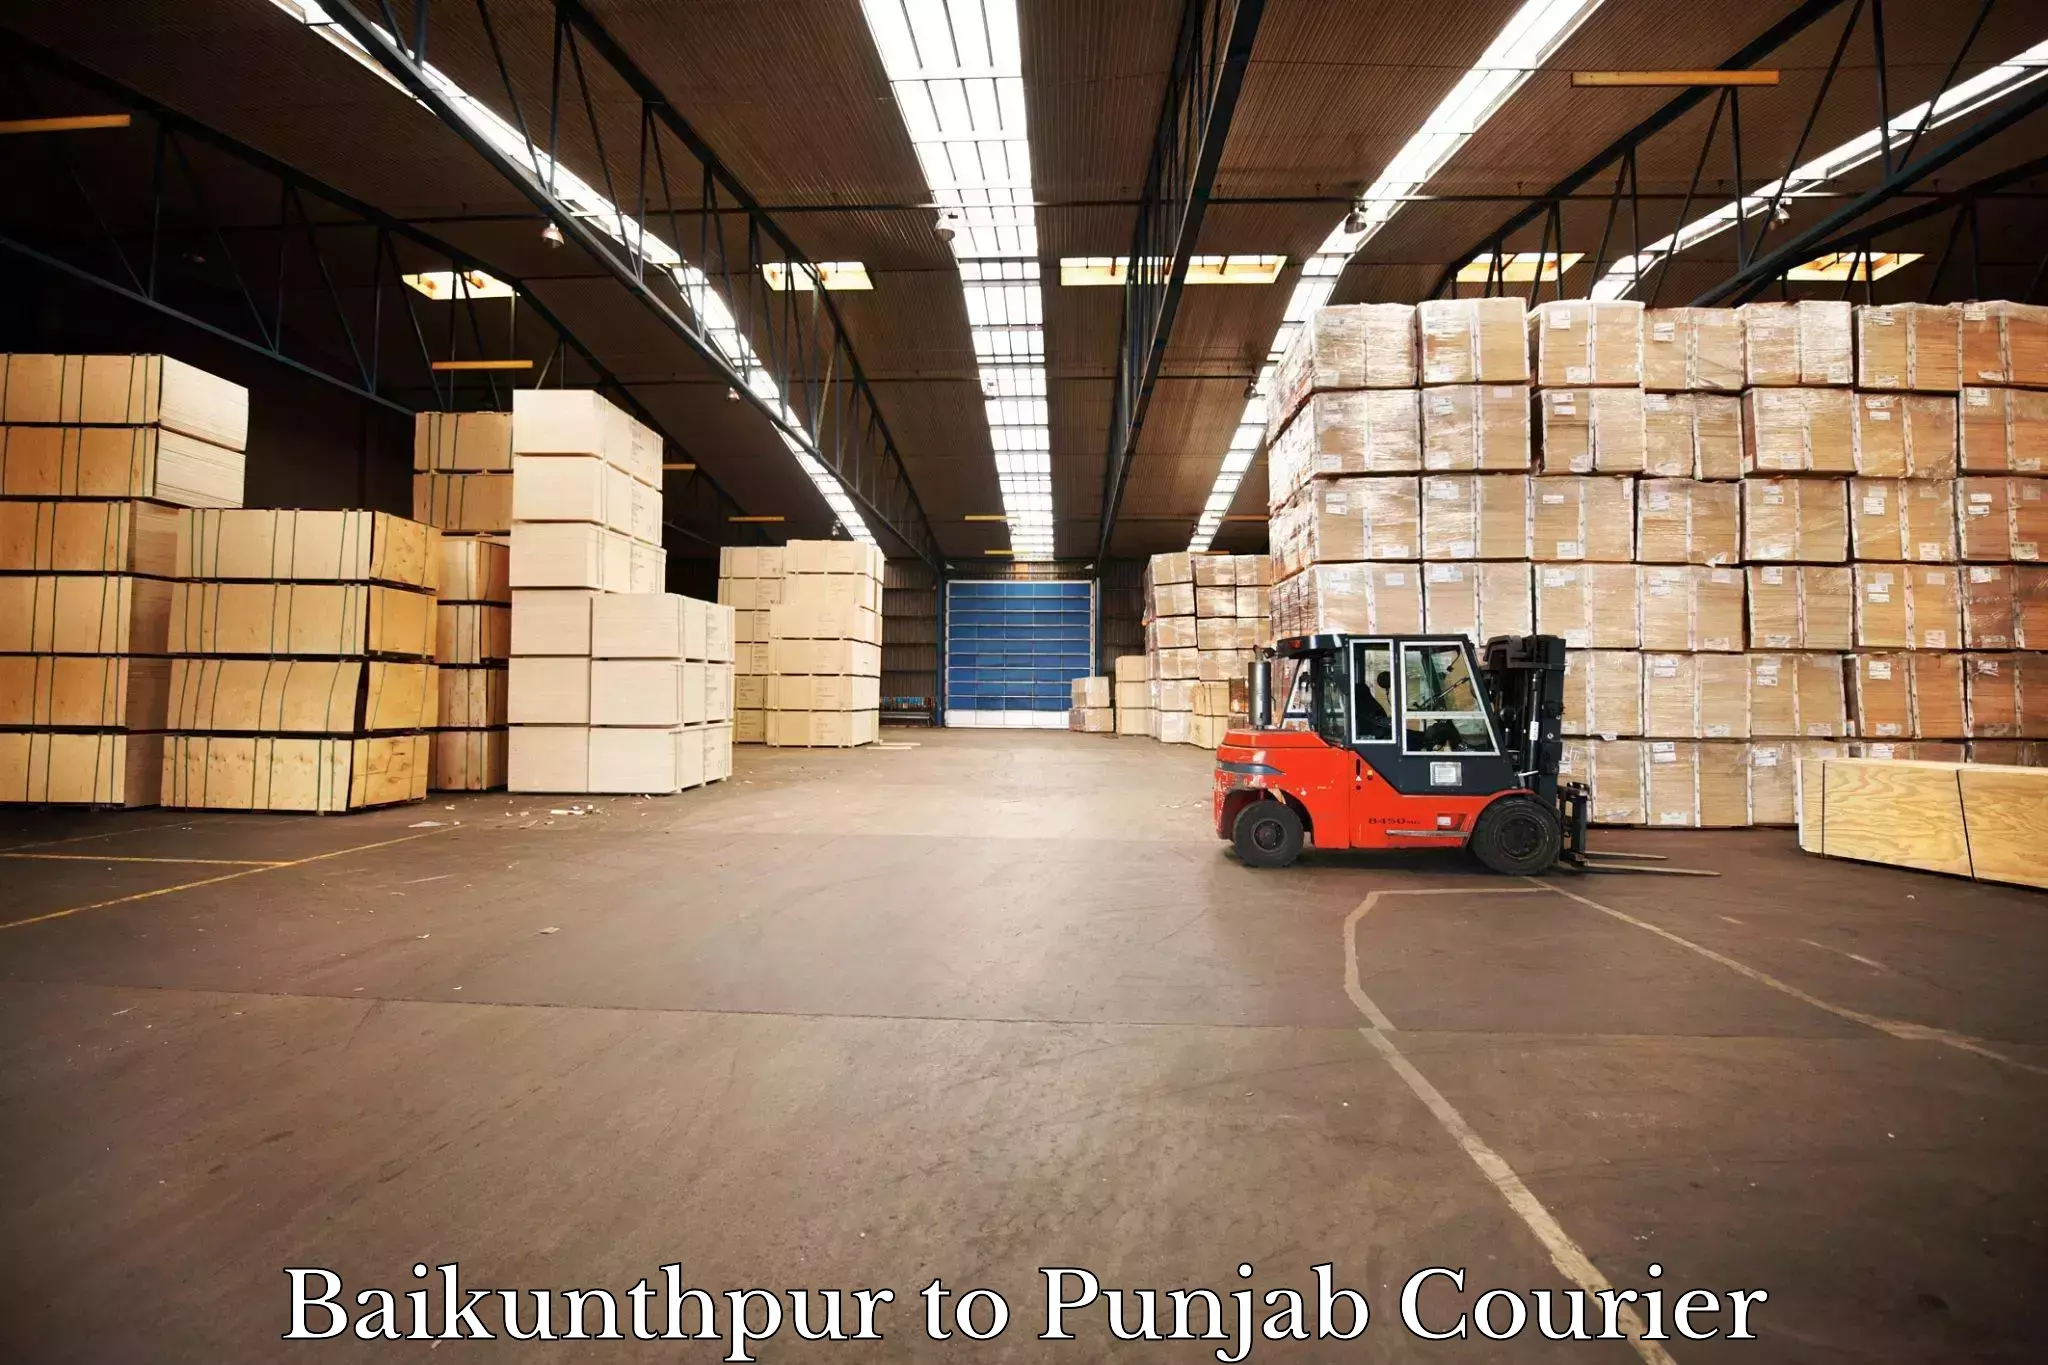 Global logistics network Baikunthpur to Dera Bassi